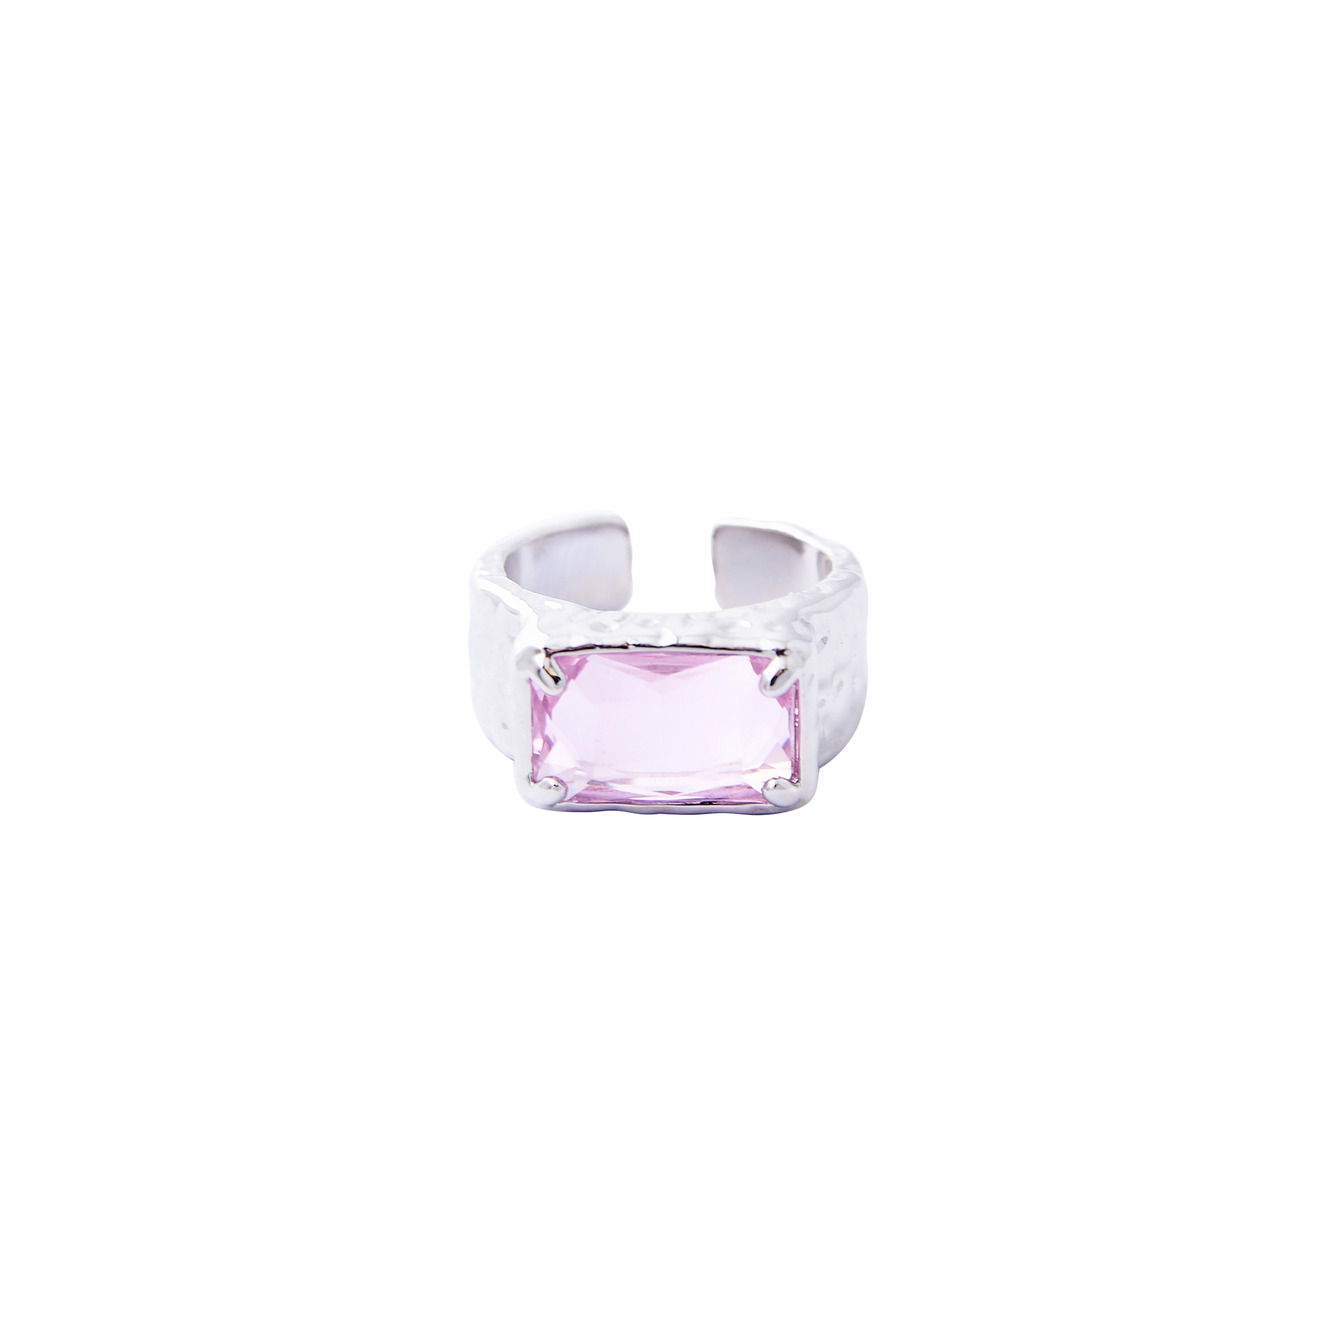 Herald Percy Серебристое кольцо с крупным розовым кристаллом herald percy серебристое фигурное кольцо с зеленым сердцем